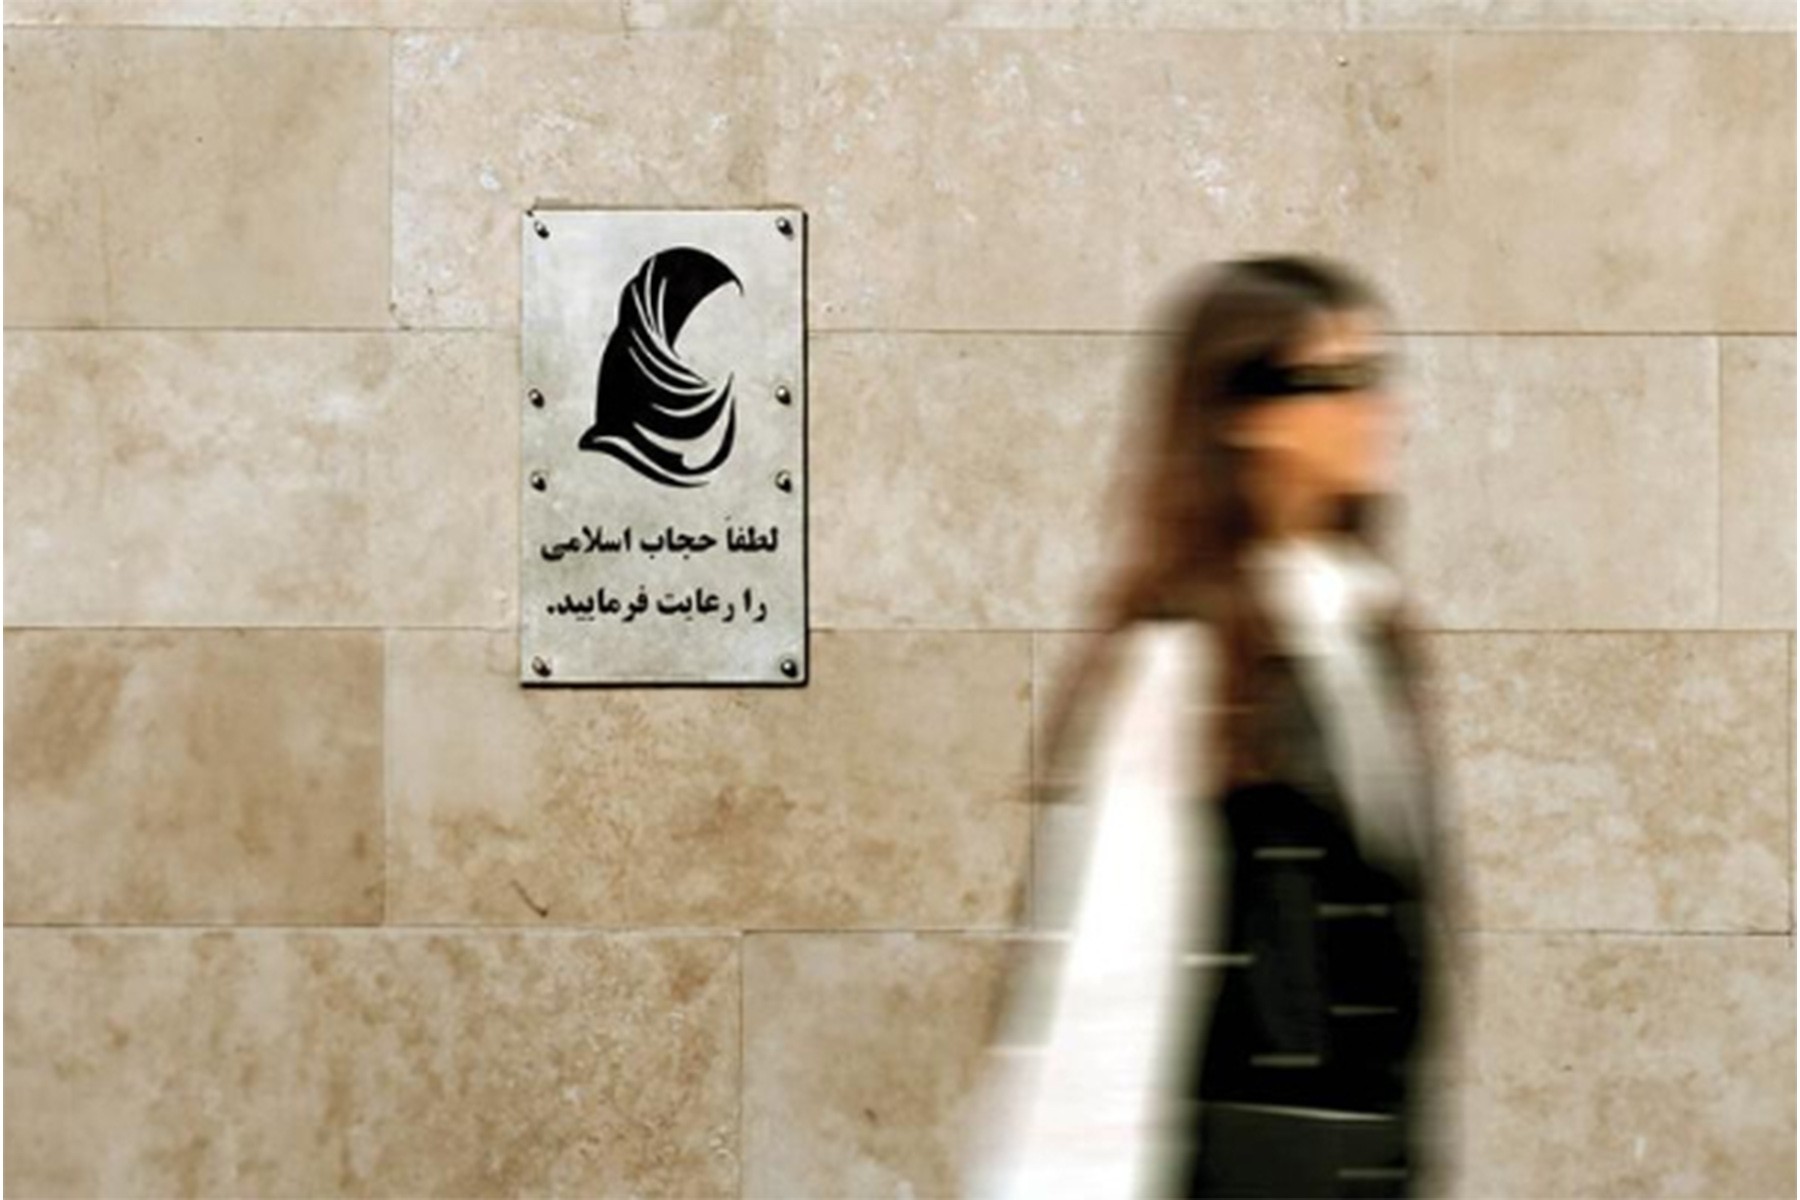 تدوین لایحه عفاف و حجاب و اختلاف قوه قضائیه و دولت بر سر مسئولیت آن